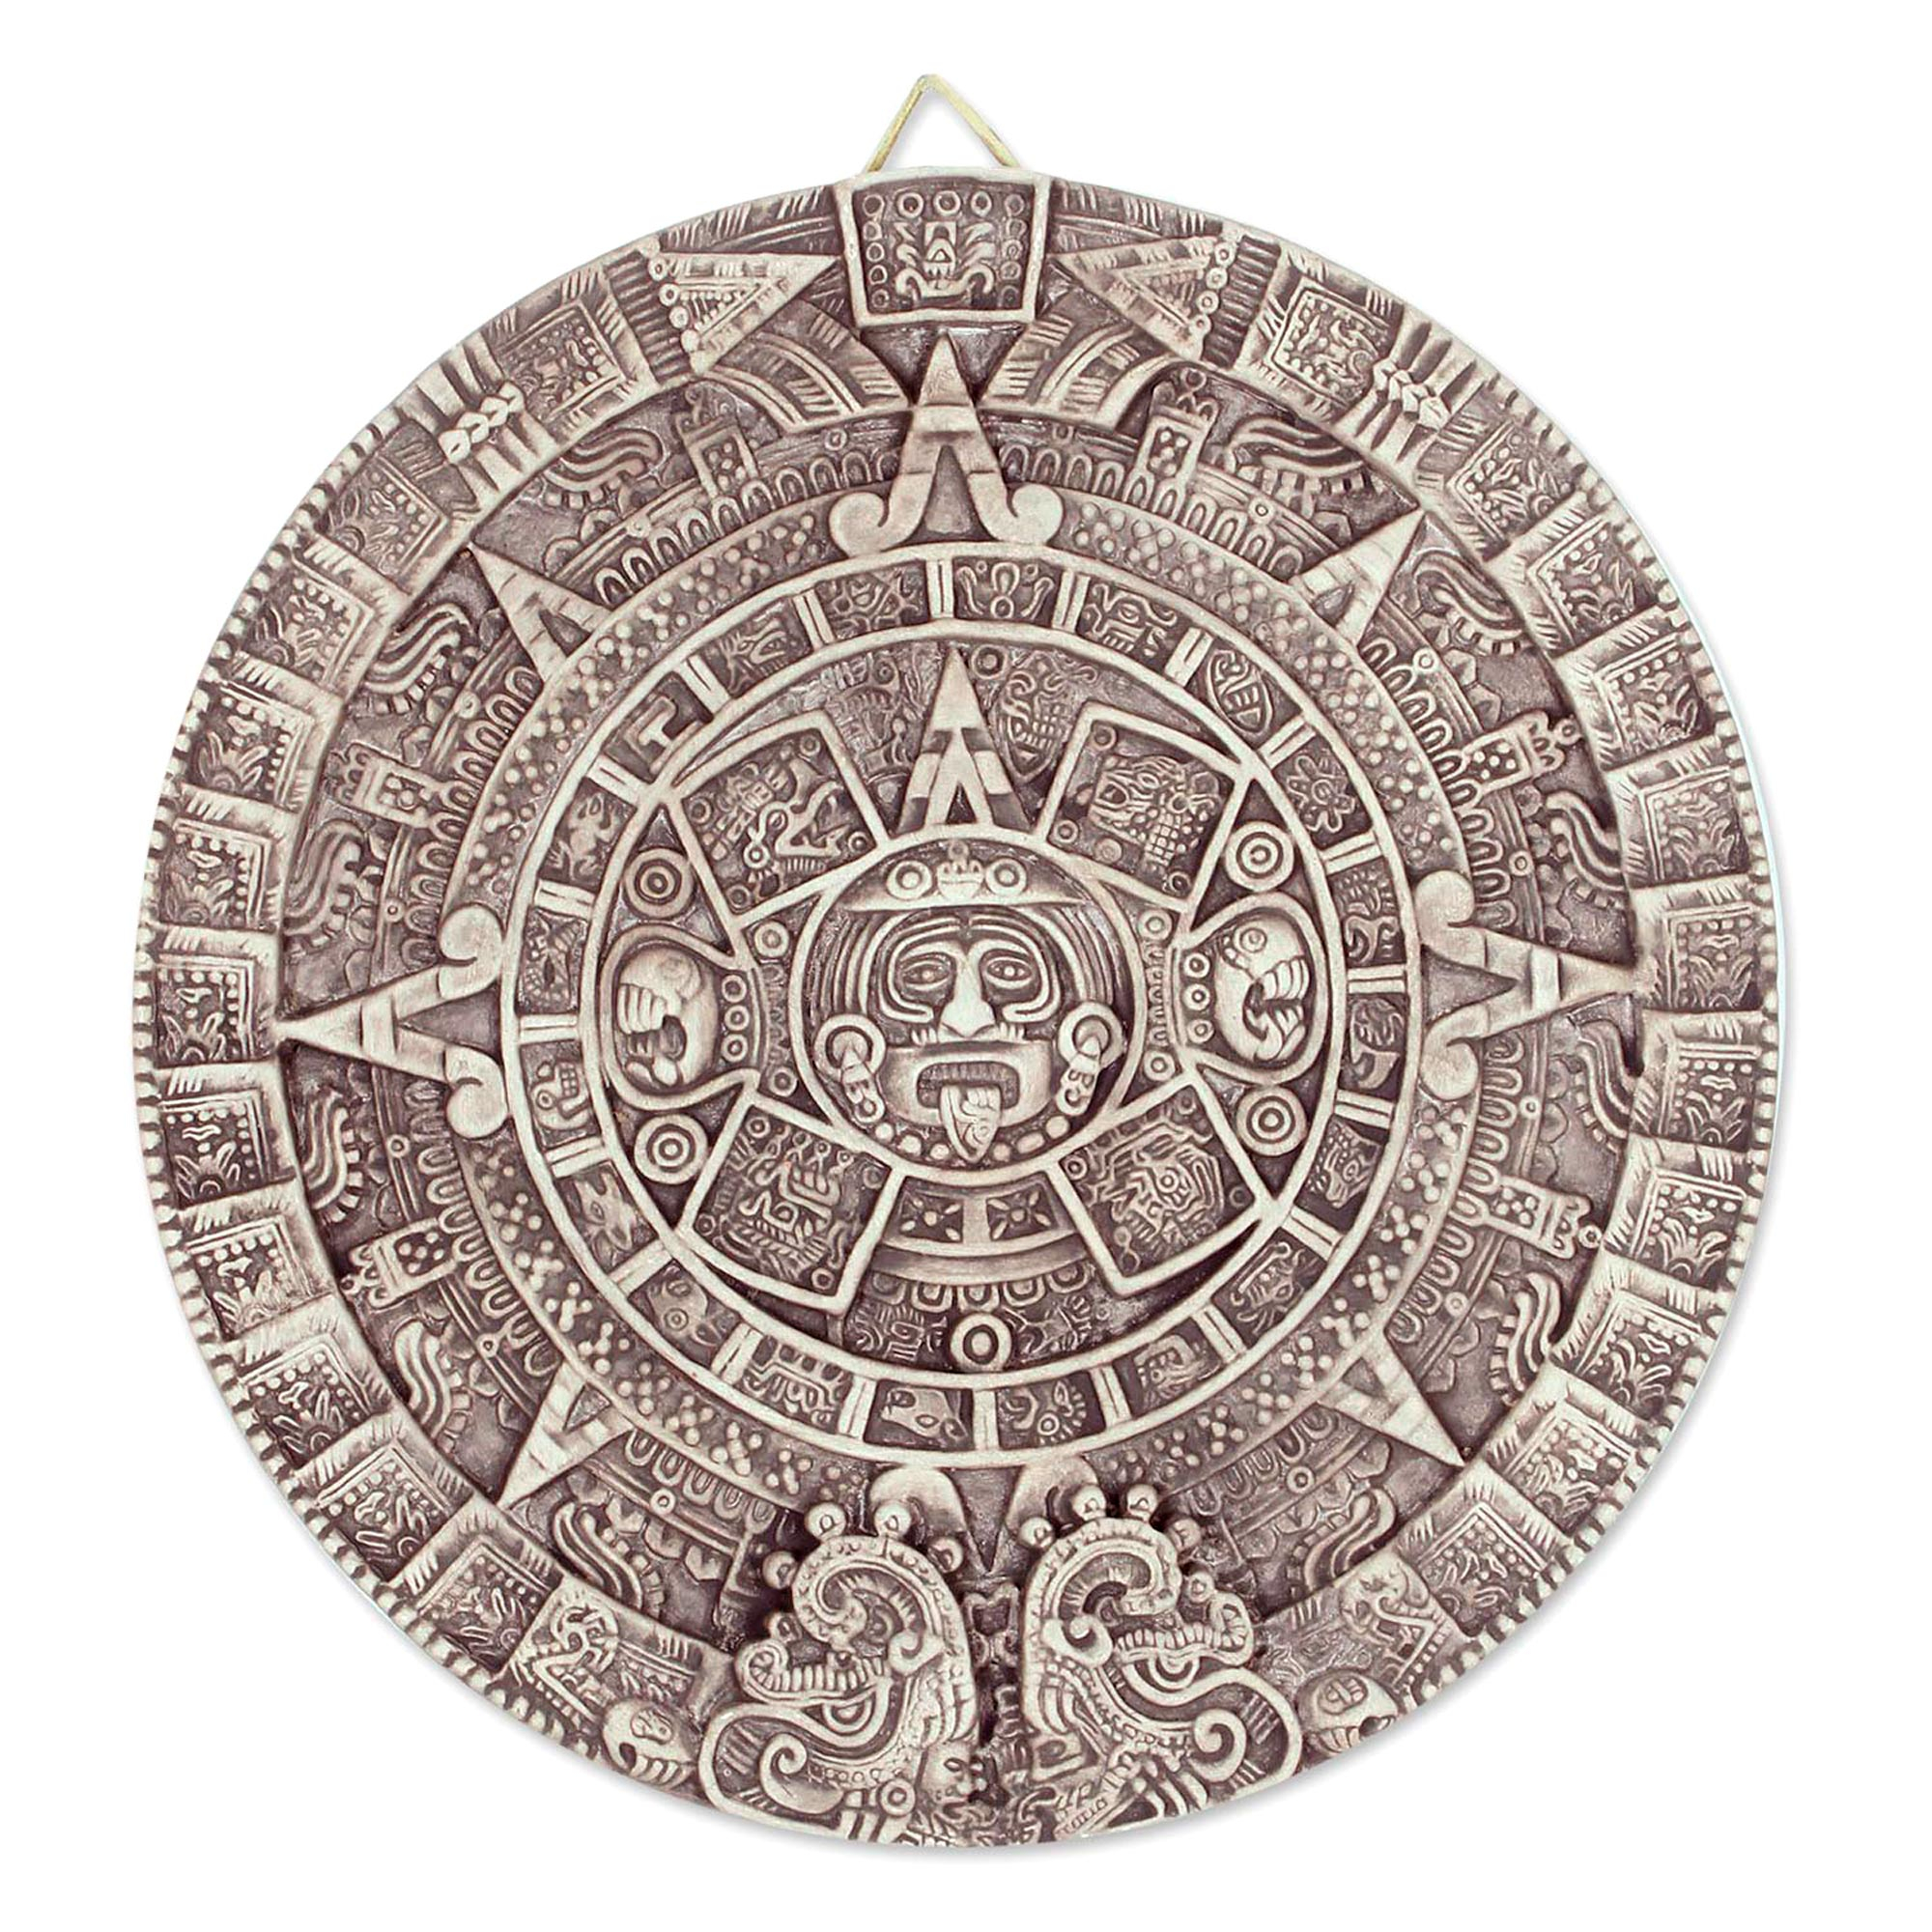 Календарь майя сообщение